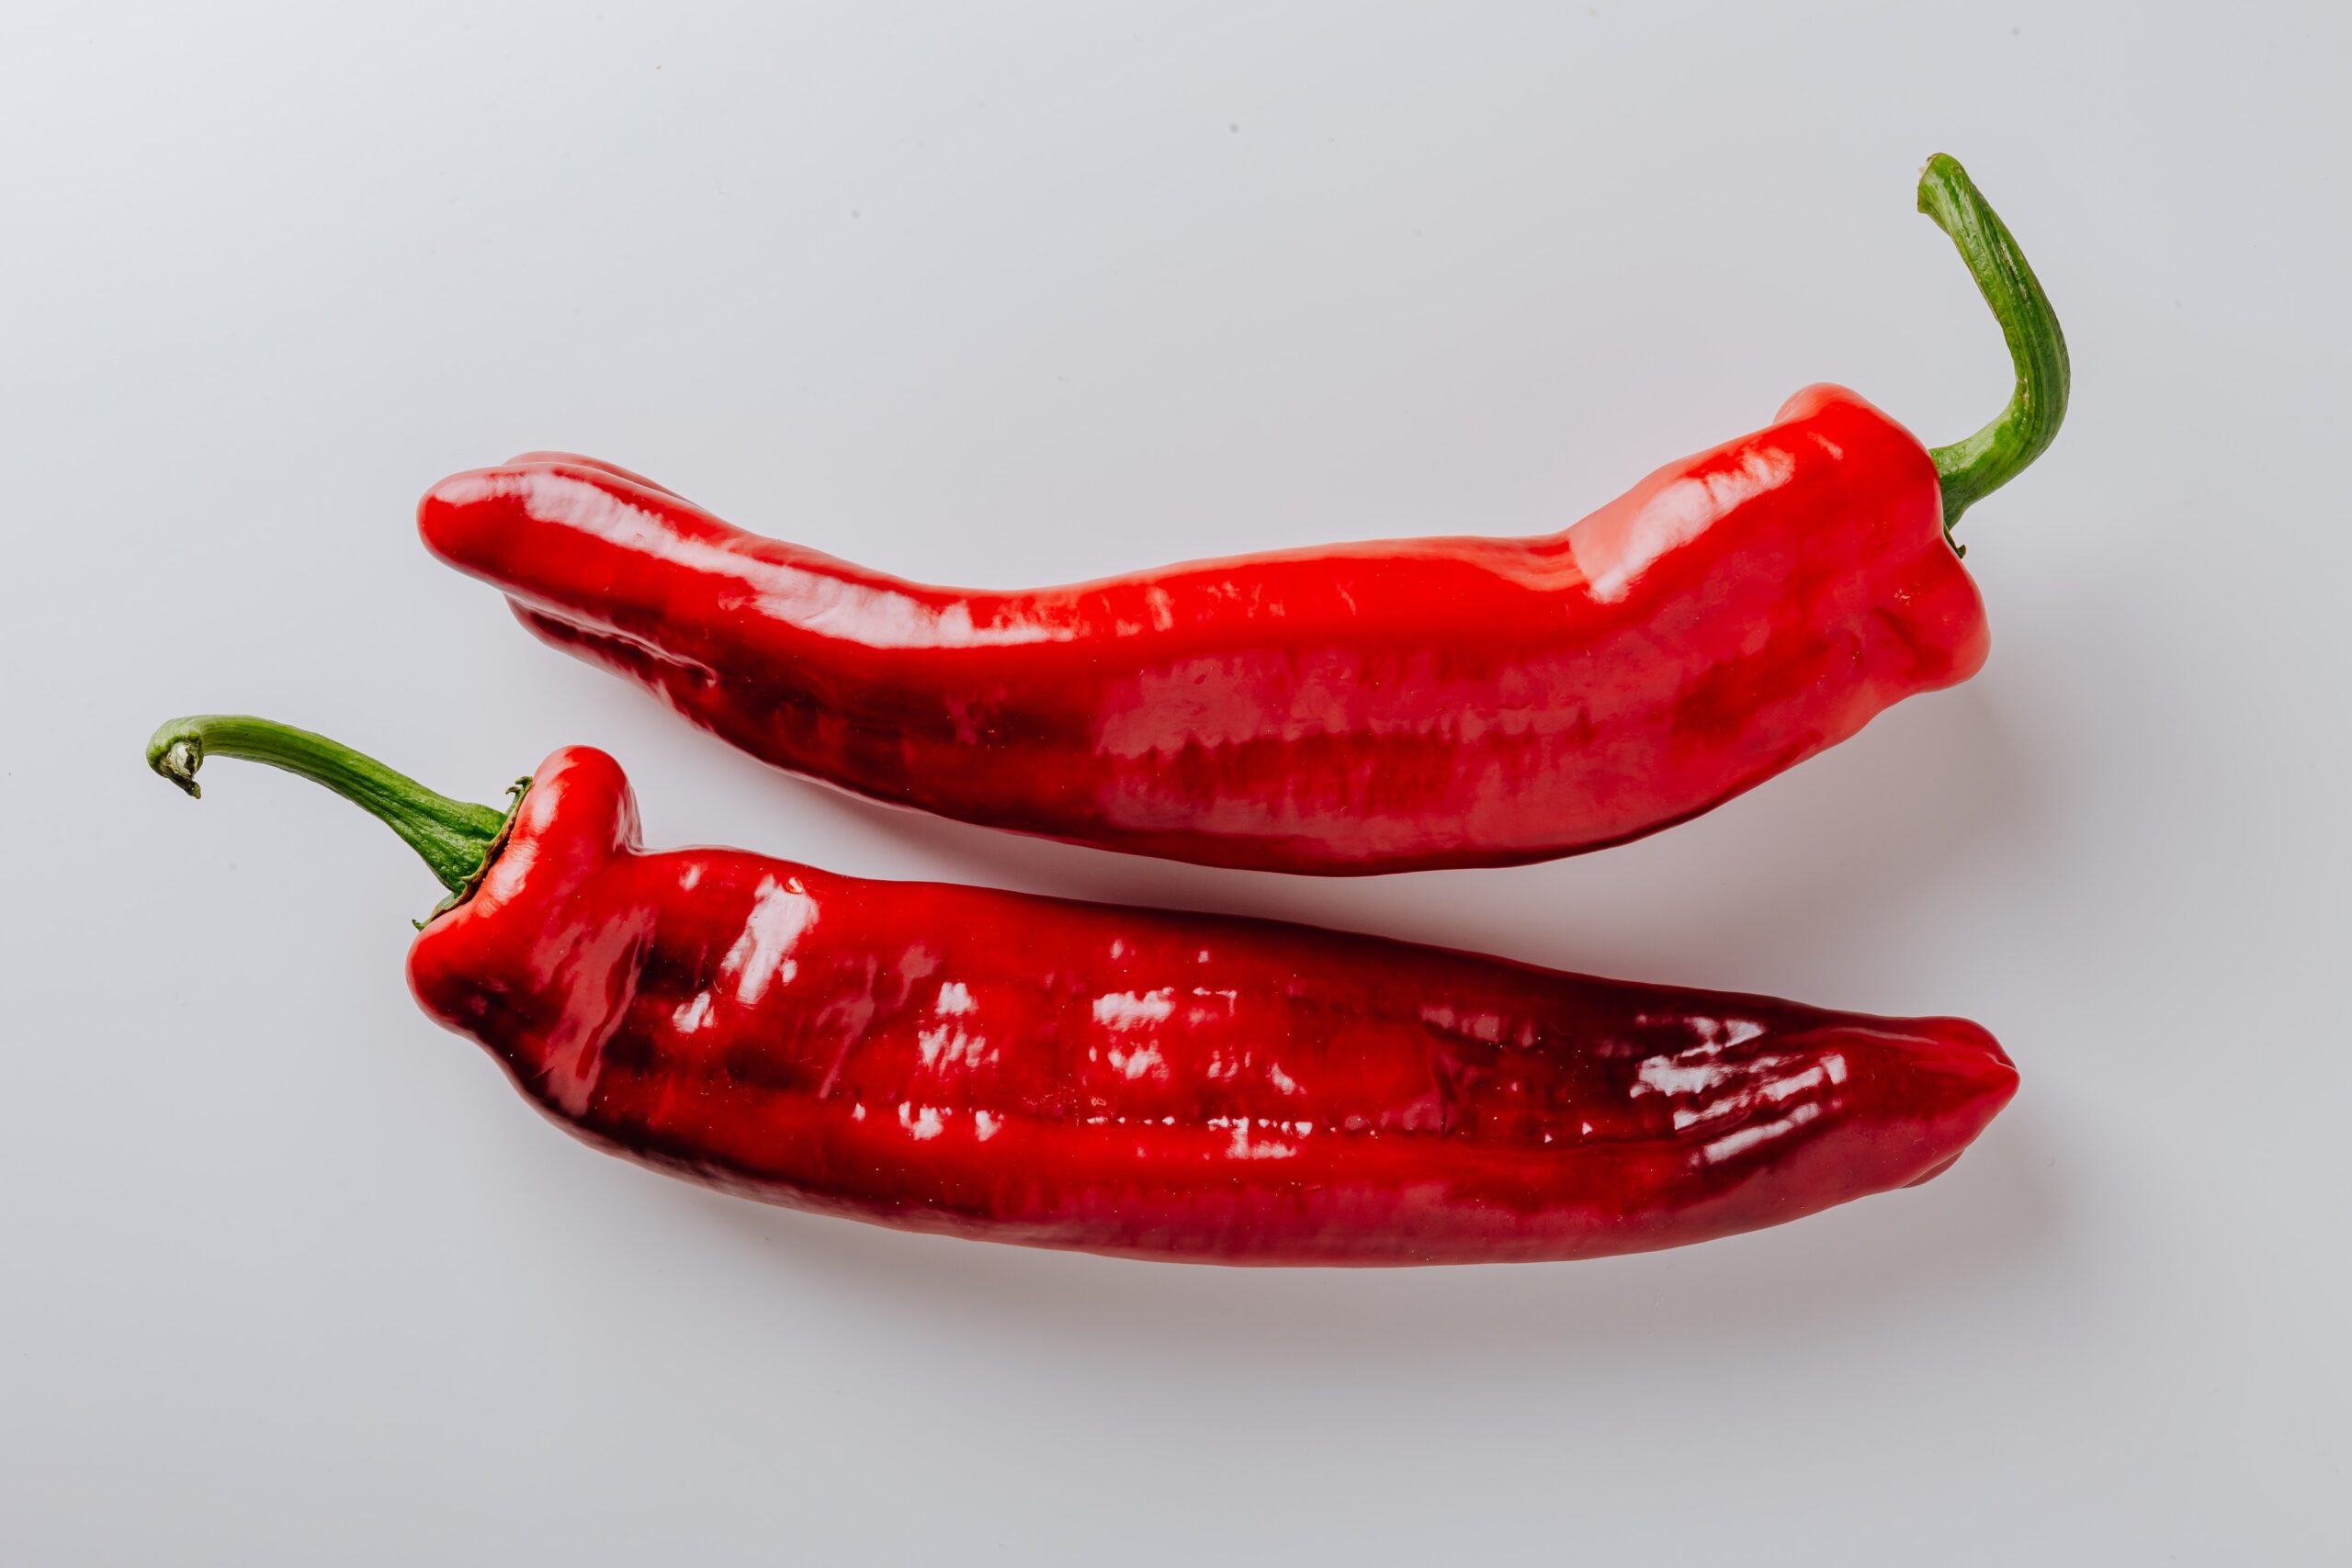 Chili Food and Travel Blog